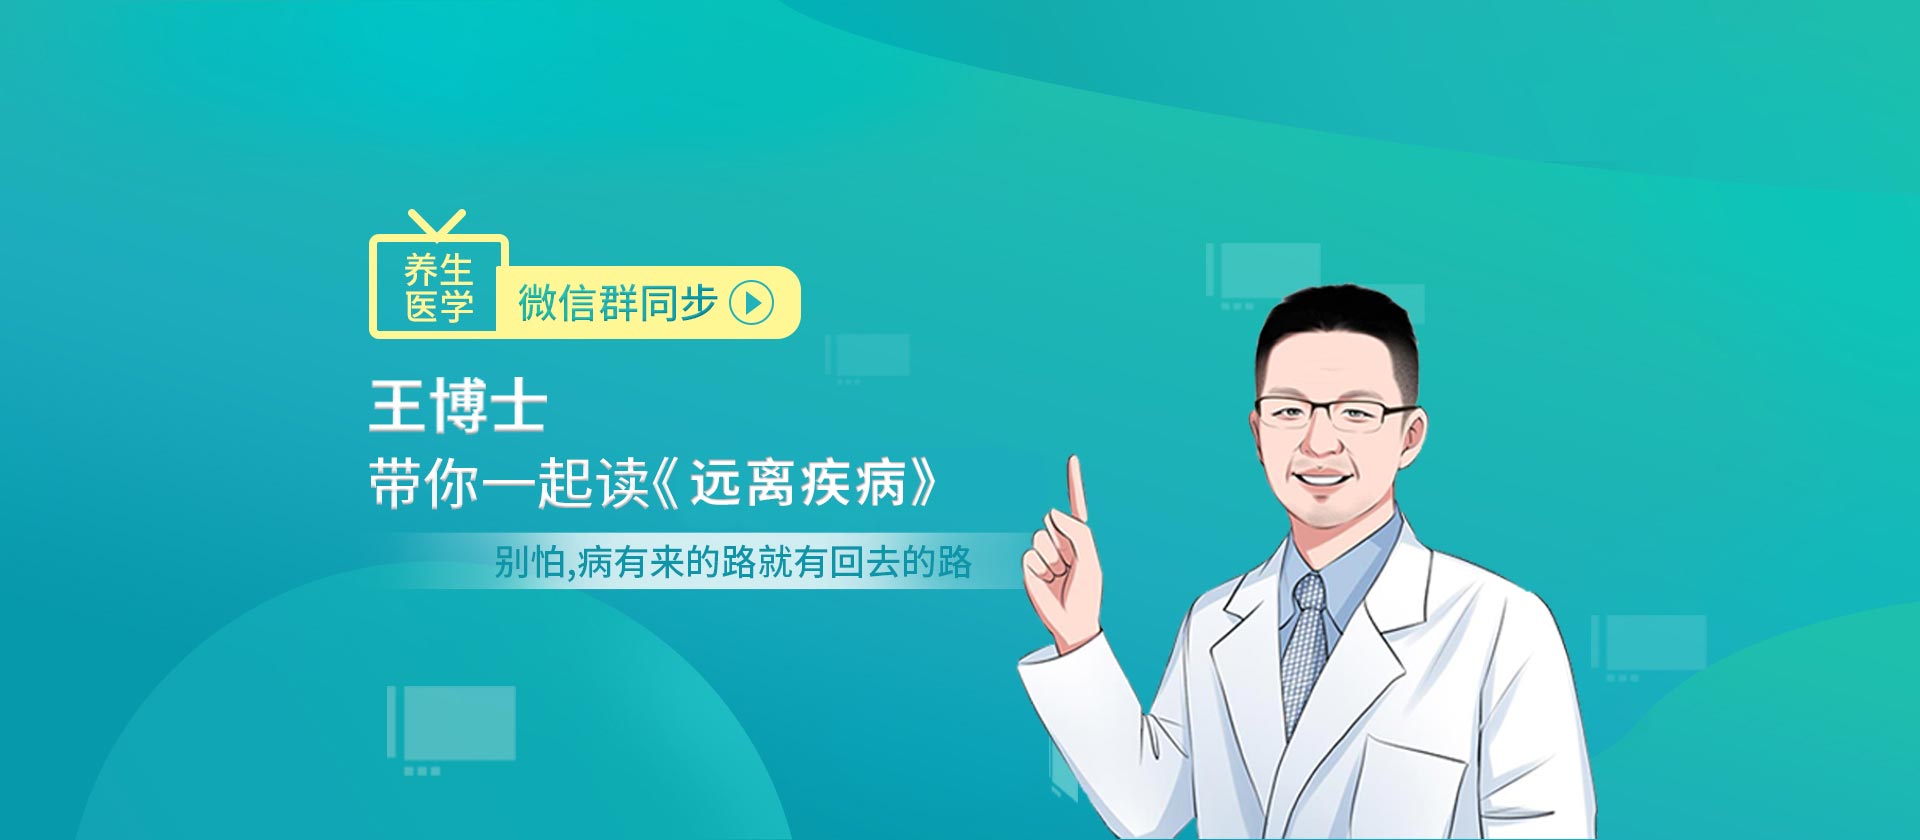 王涛博士营养素调理慢性病-河北盛景和医药科技有限公司